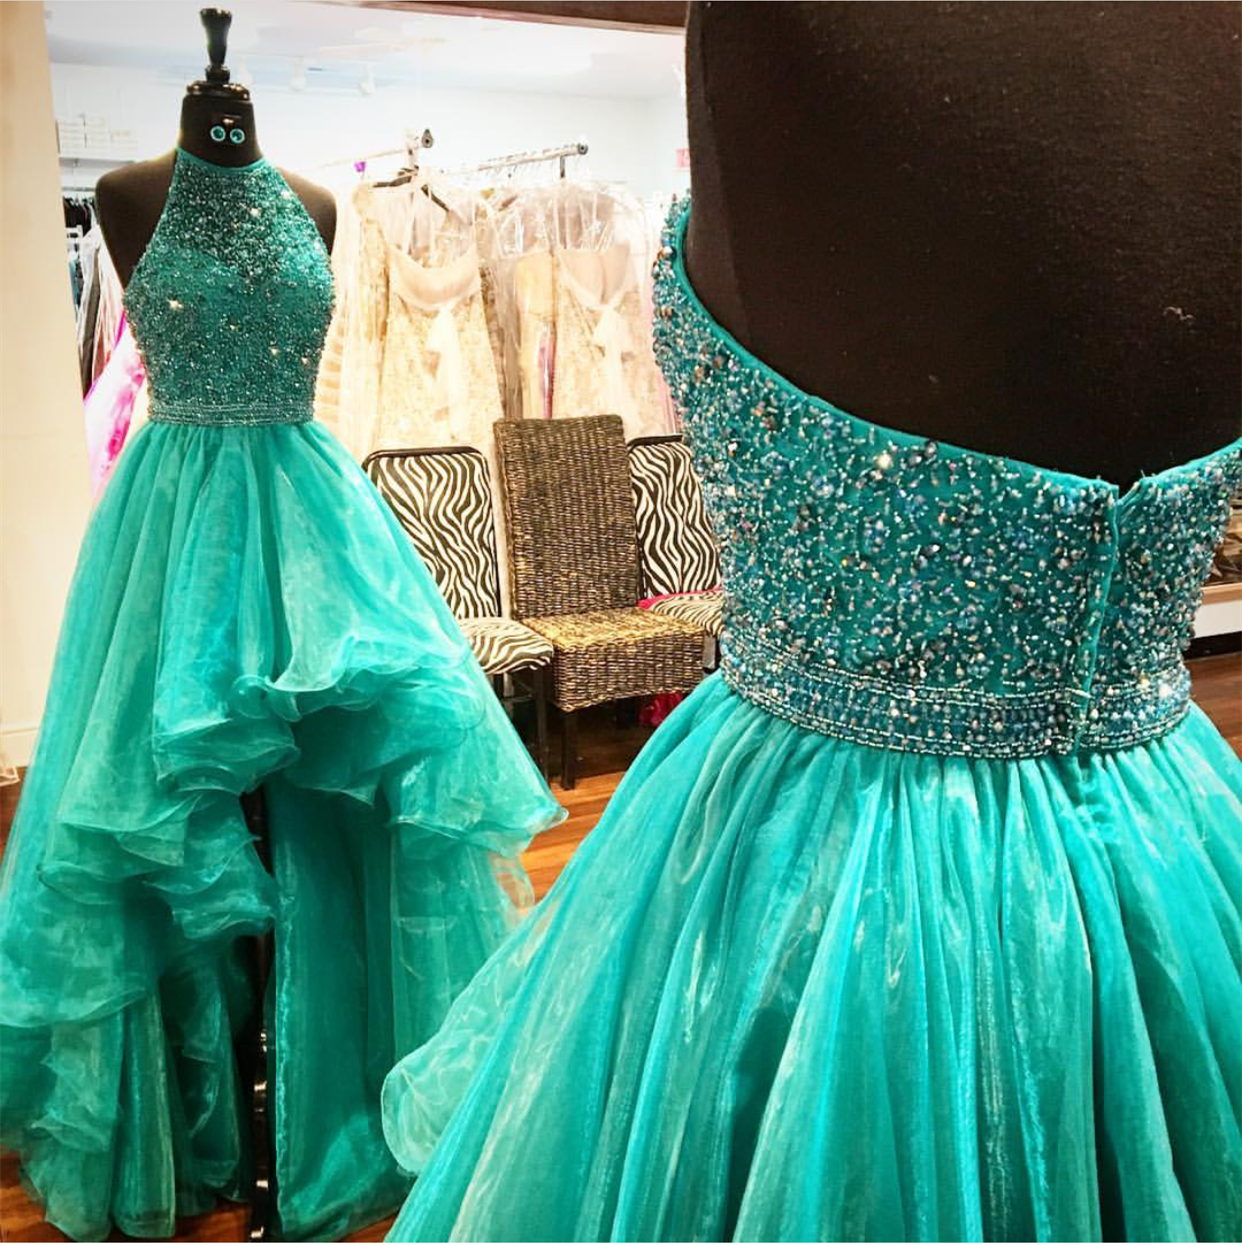 Halter Prom Dress, Sexy Prom Dress, Beaded Prom Dress, Crystal Prom Dress, Backless Prom Dress, High Low Prom Dress, Emerald Green Prom Dress,